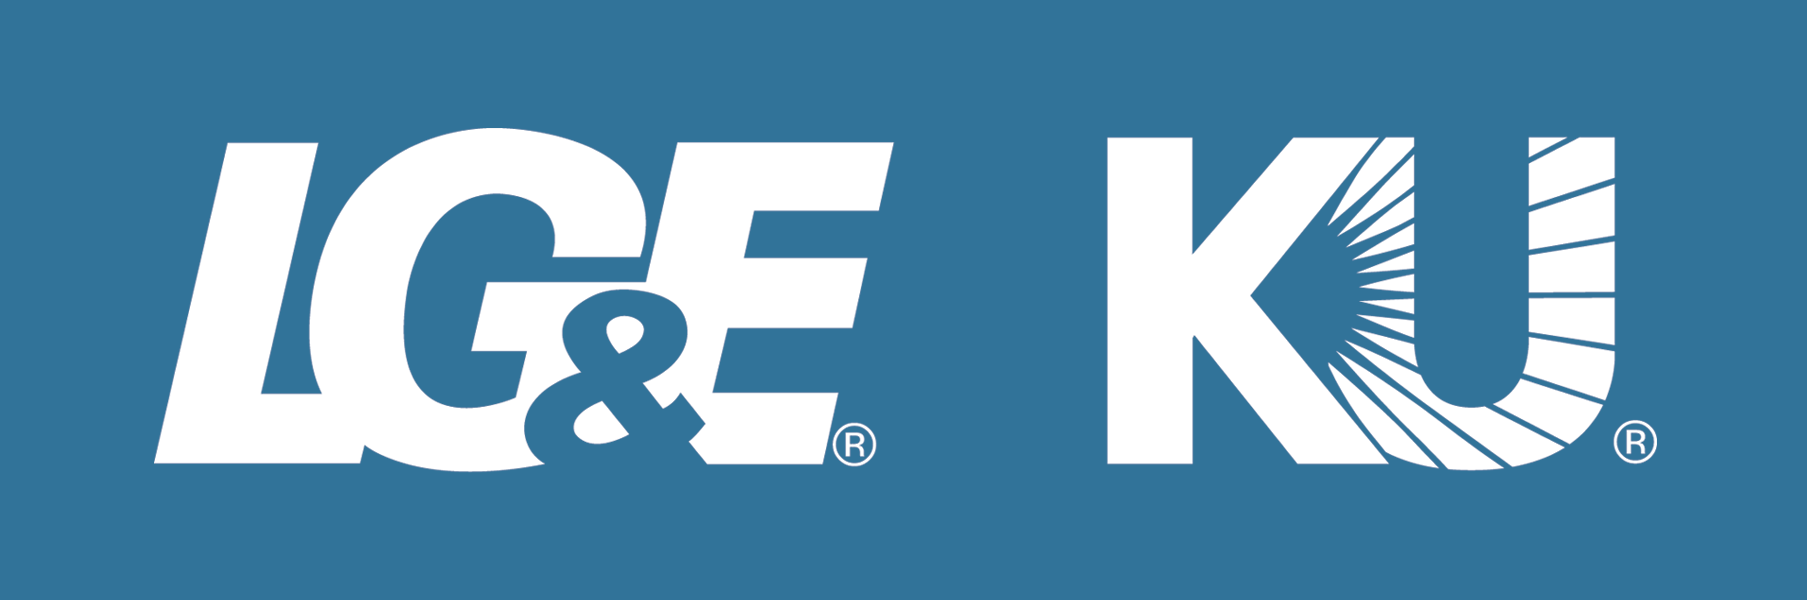 LGE KU Logo